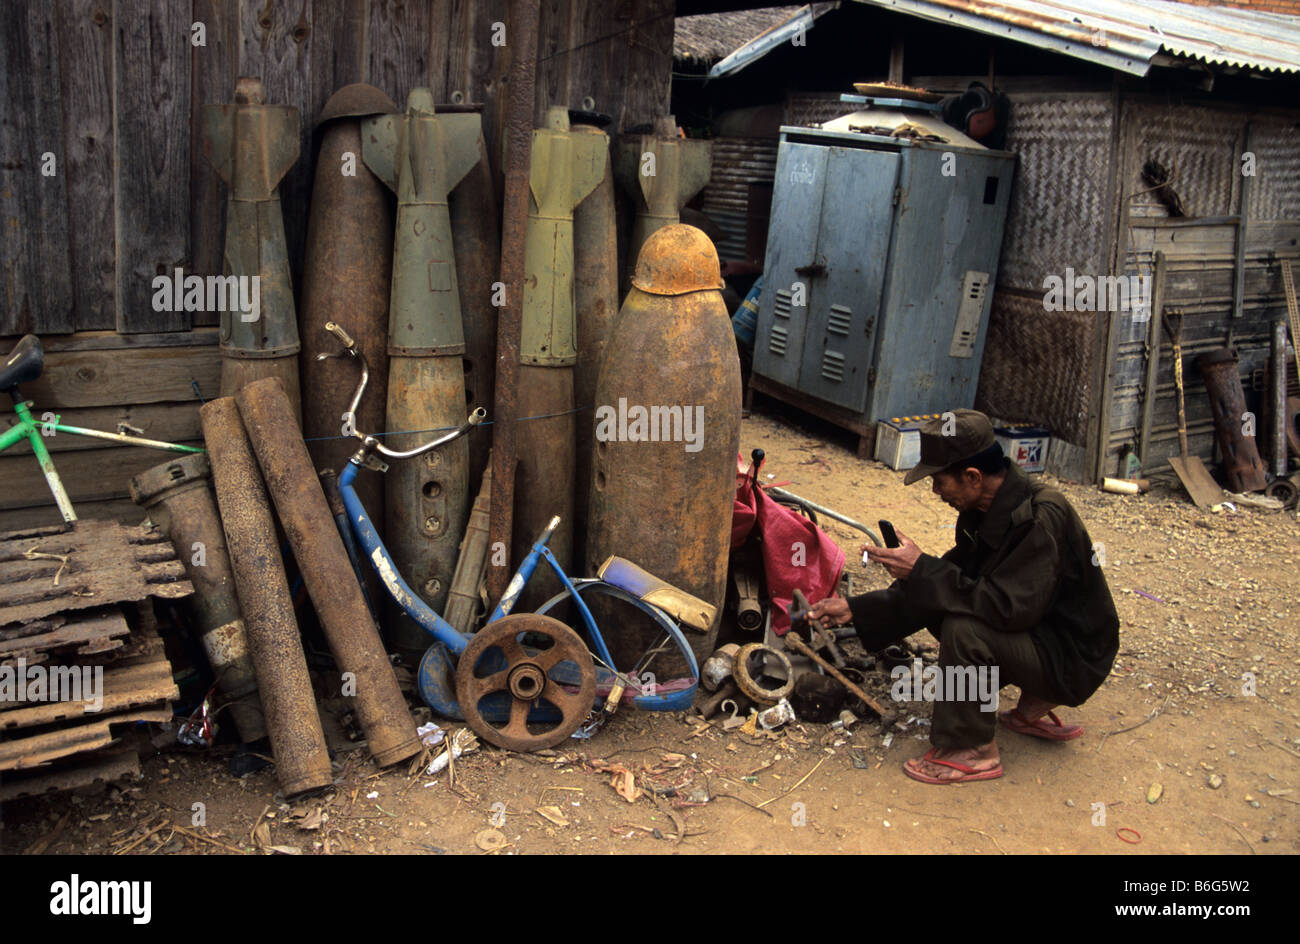 A scrap metal dealer and junk yard with US Vietnam war-era war scrap, cluster bomb casings and missiles, Phonsavan, Laos Stock Photo